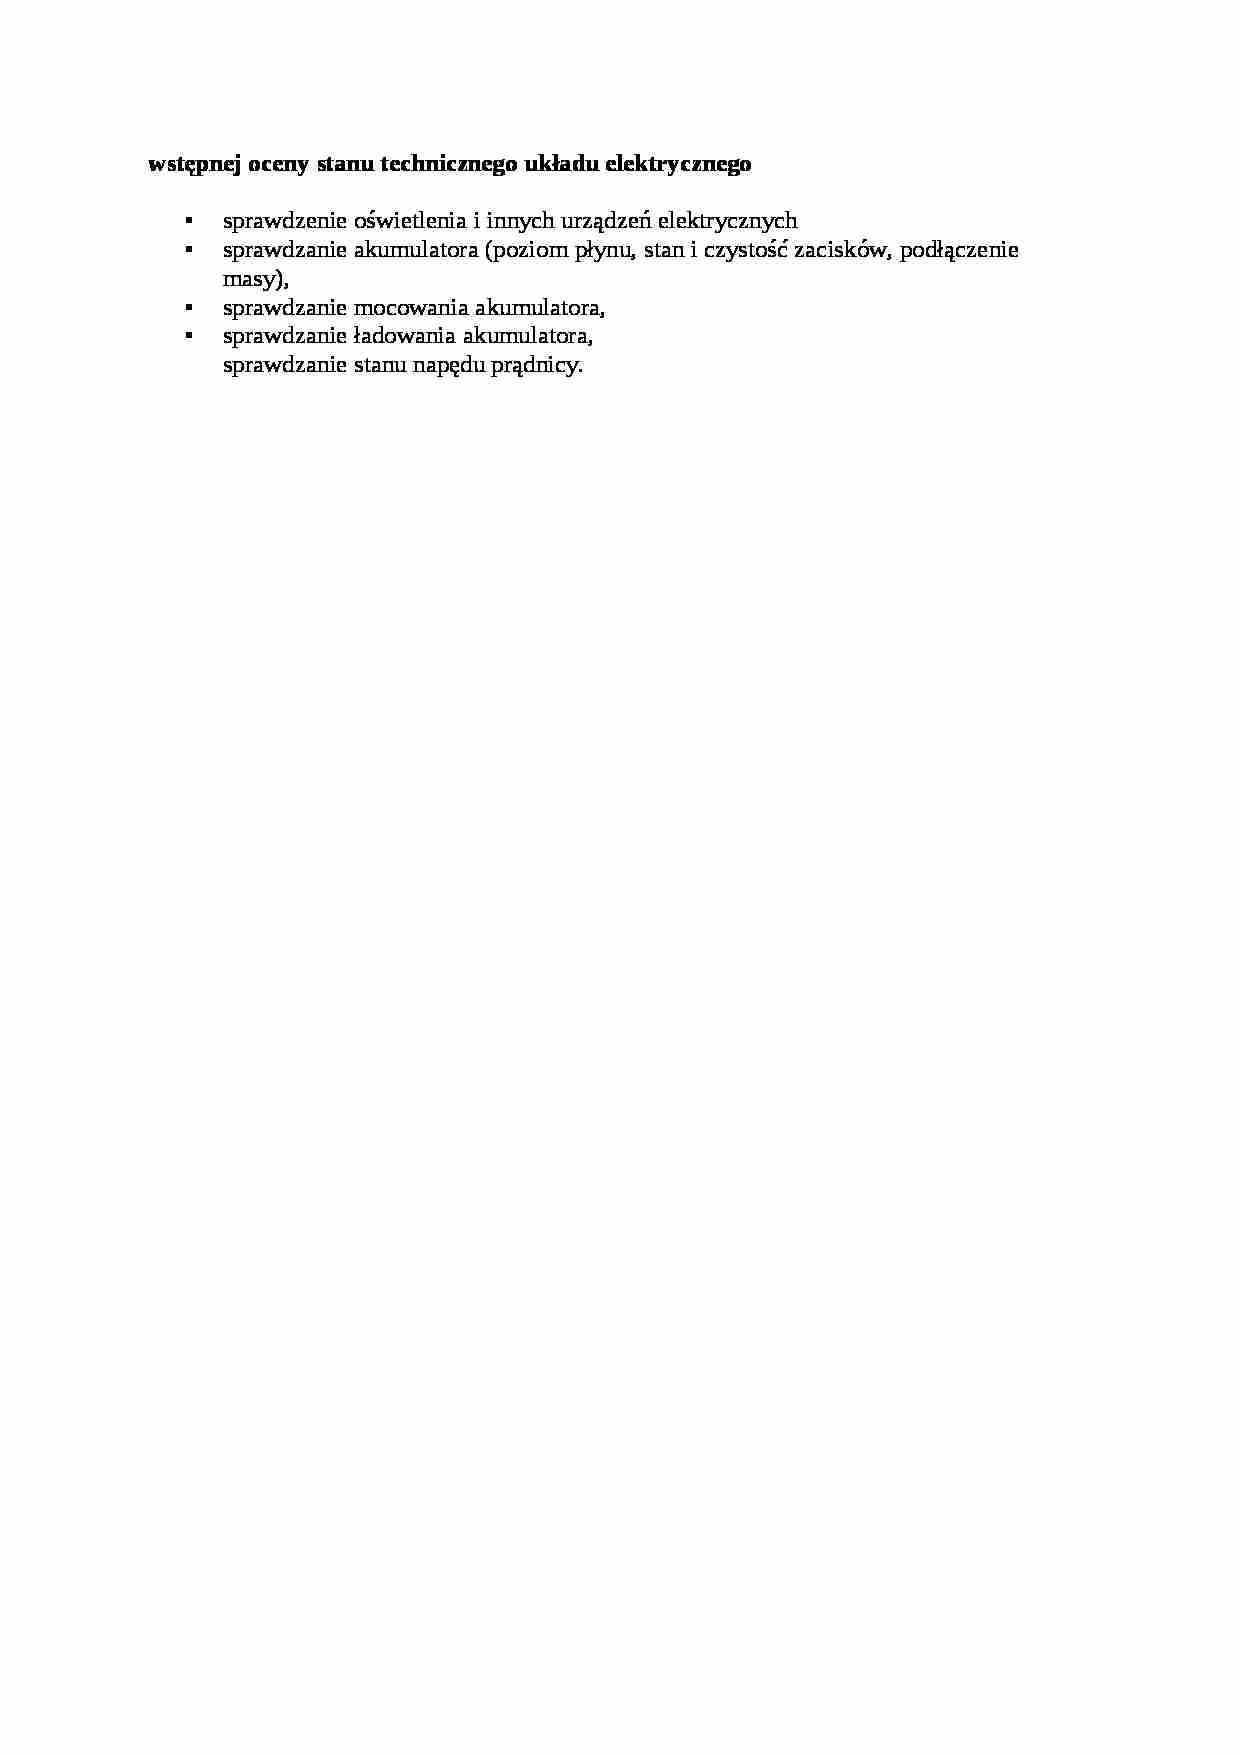 Wstępnej oceny stanu technicznego układu elektrycznego - strona 1